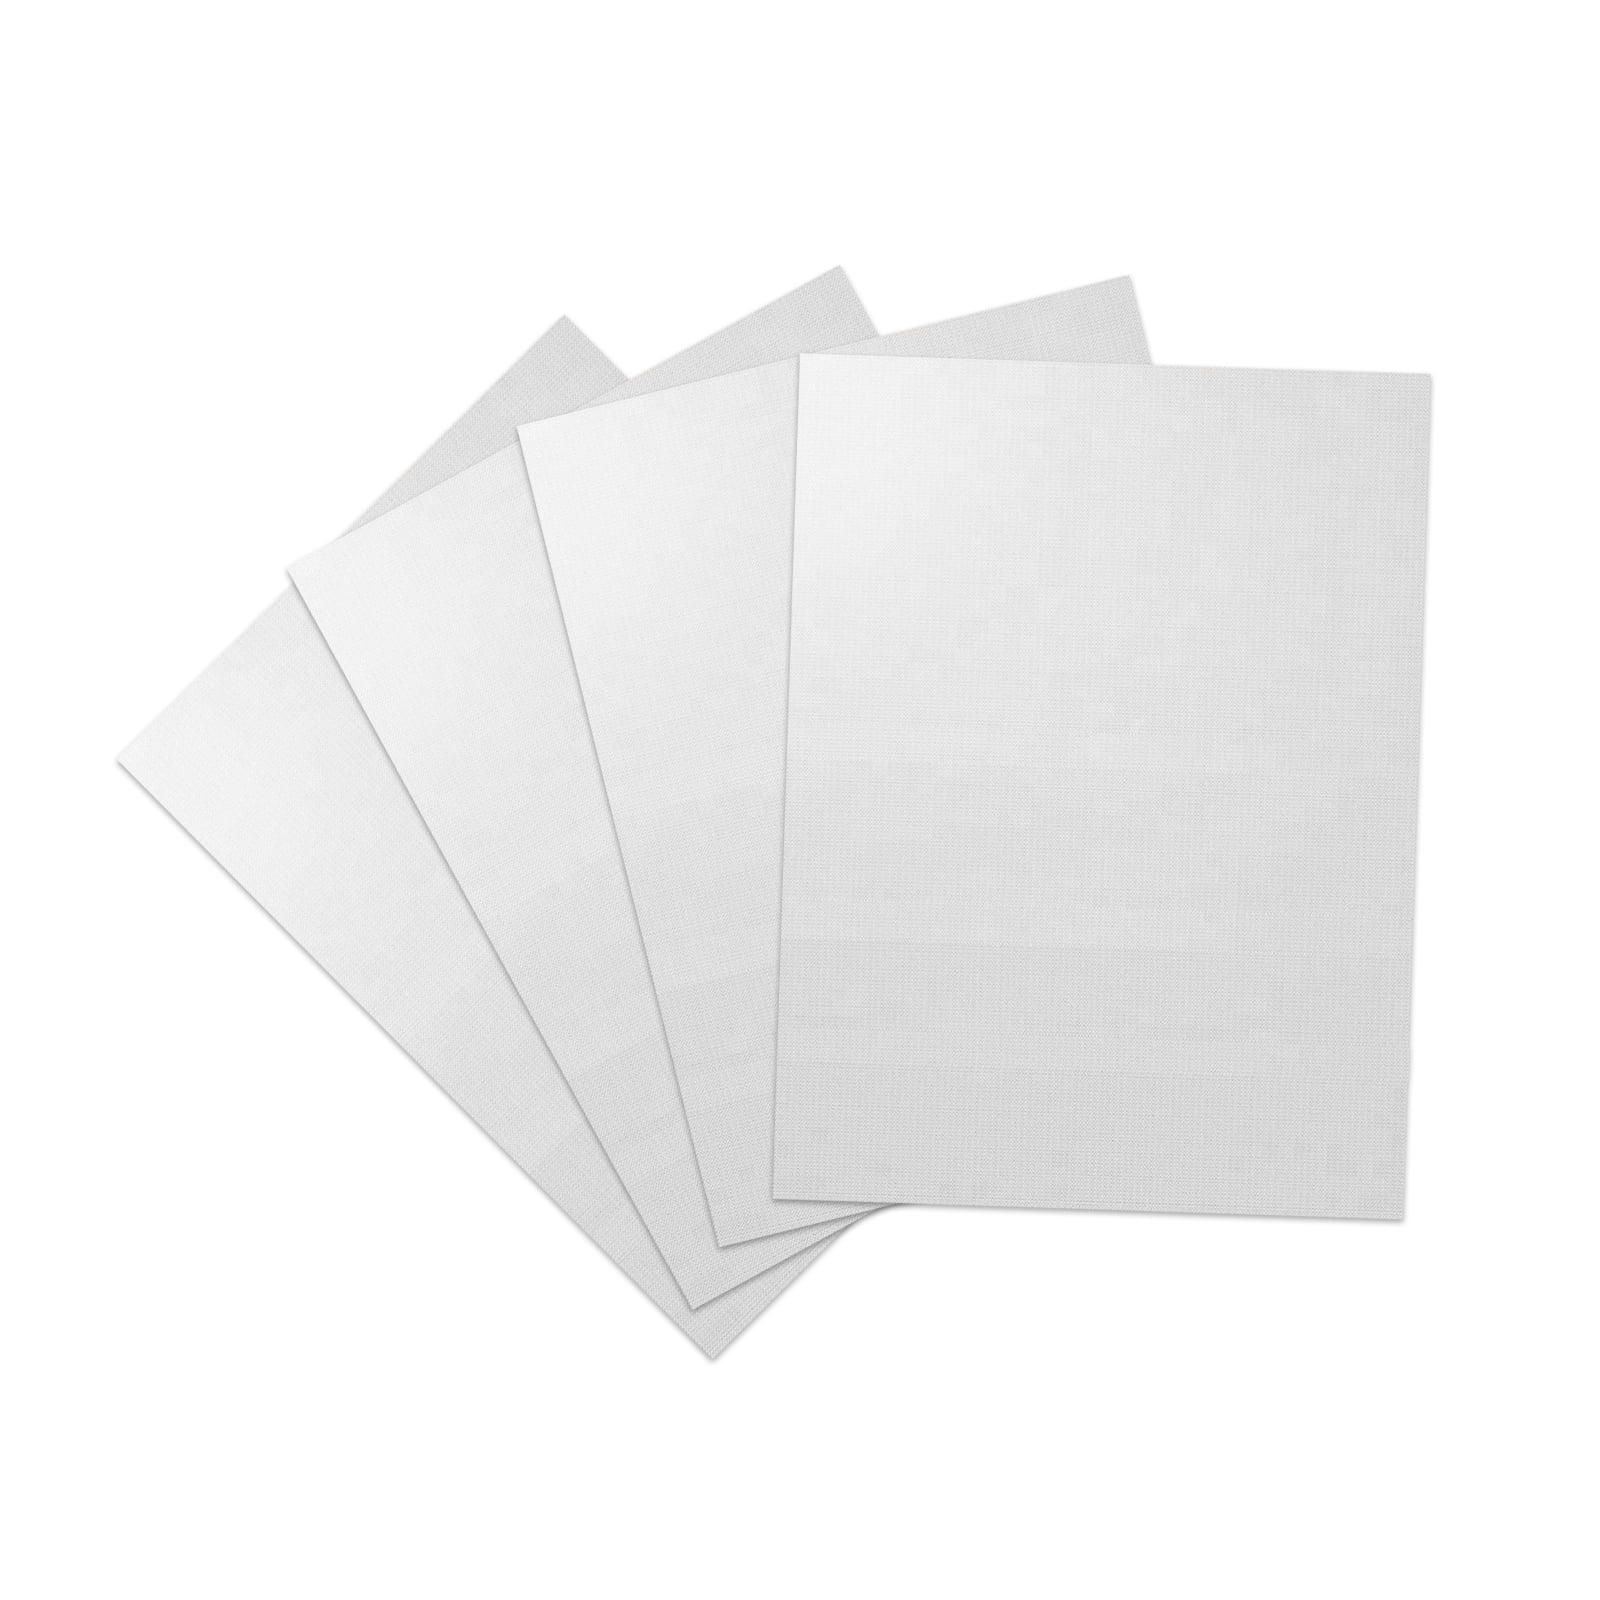 3x PTFE Teflon Sheets & 3x White Heat Resistant Tape for